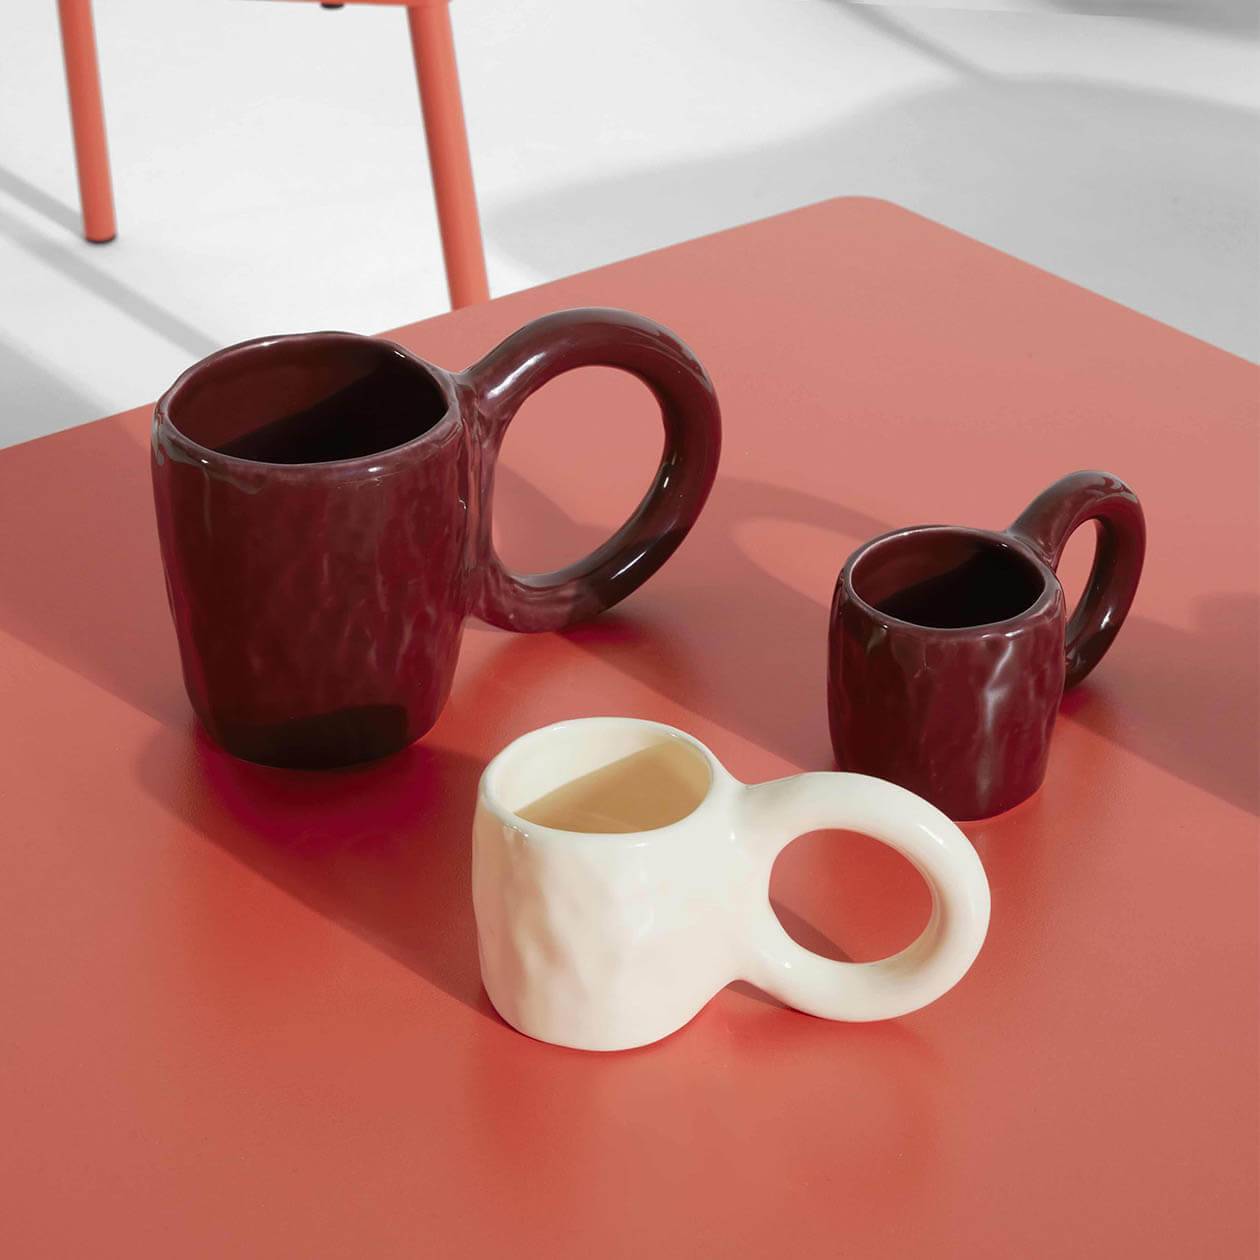 Donut mug and espresso cups - Pia Chevalier